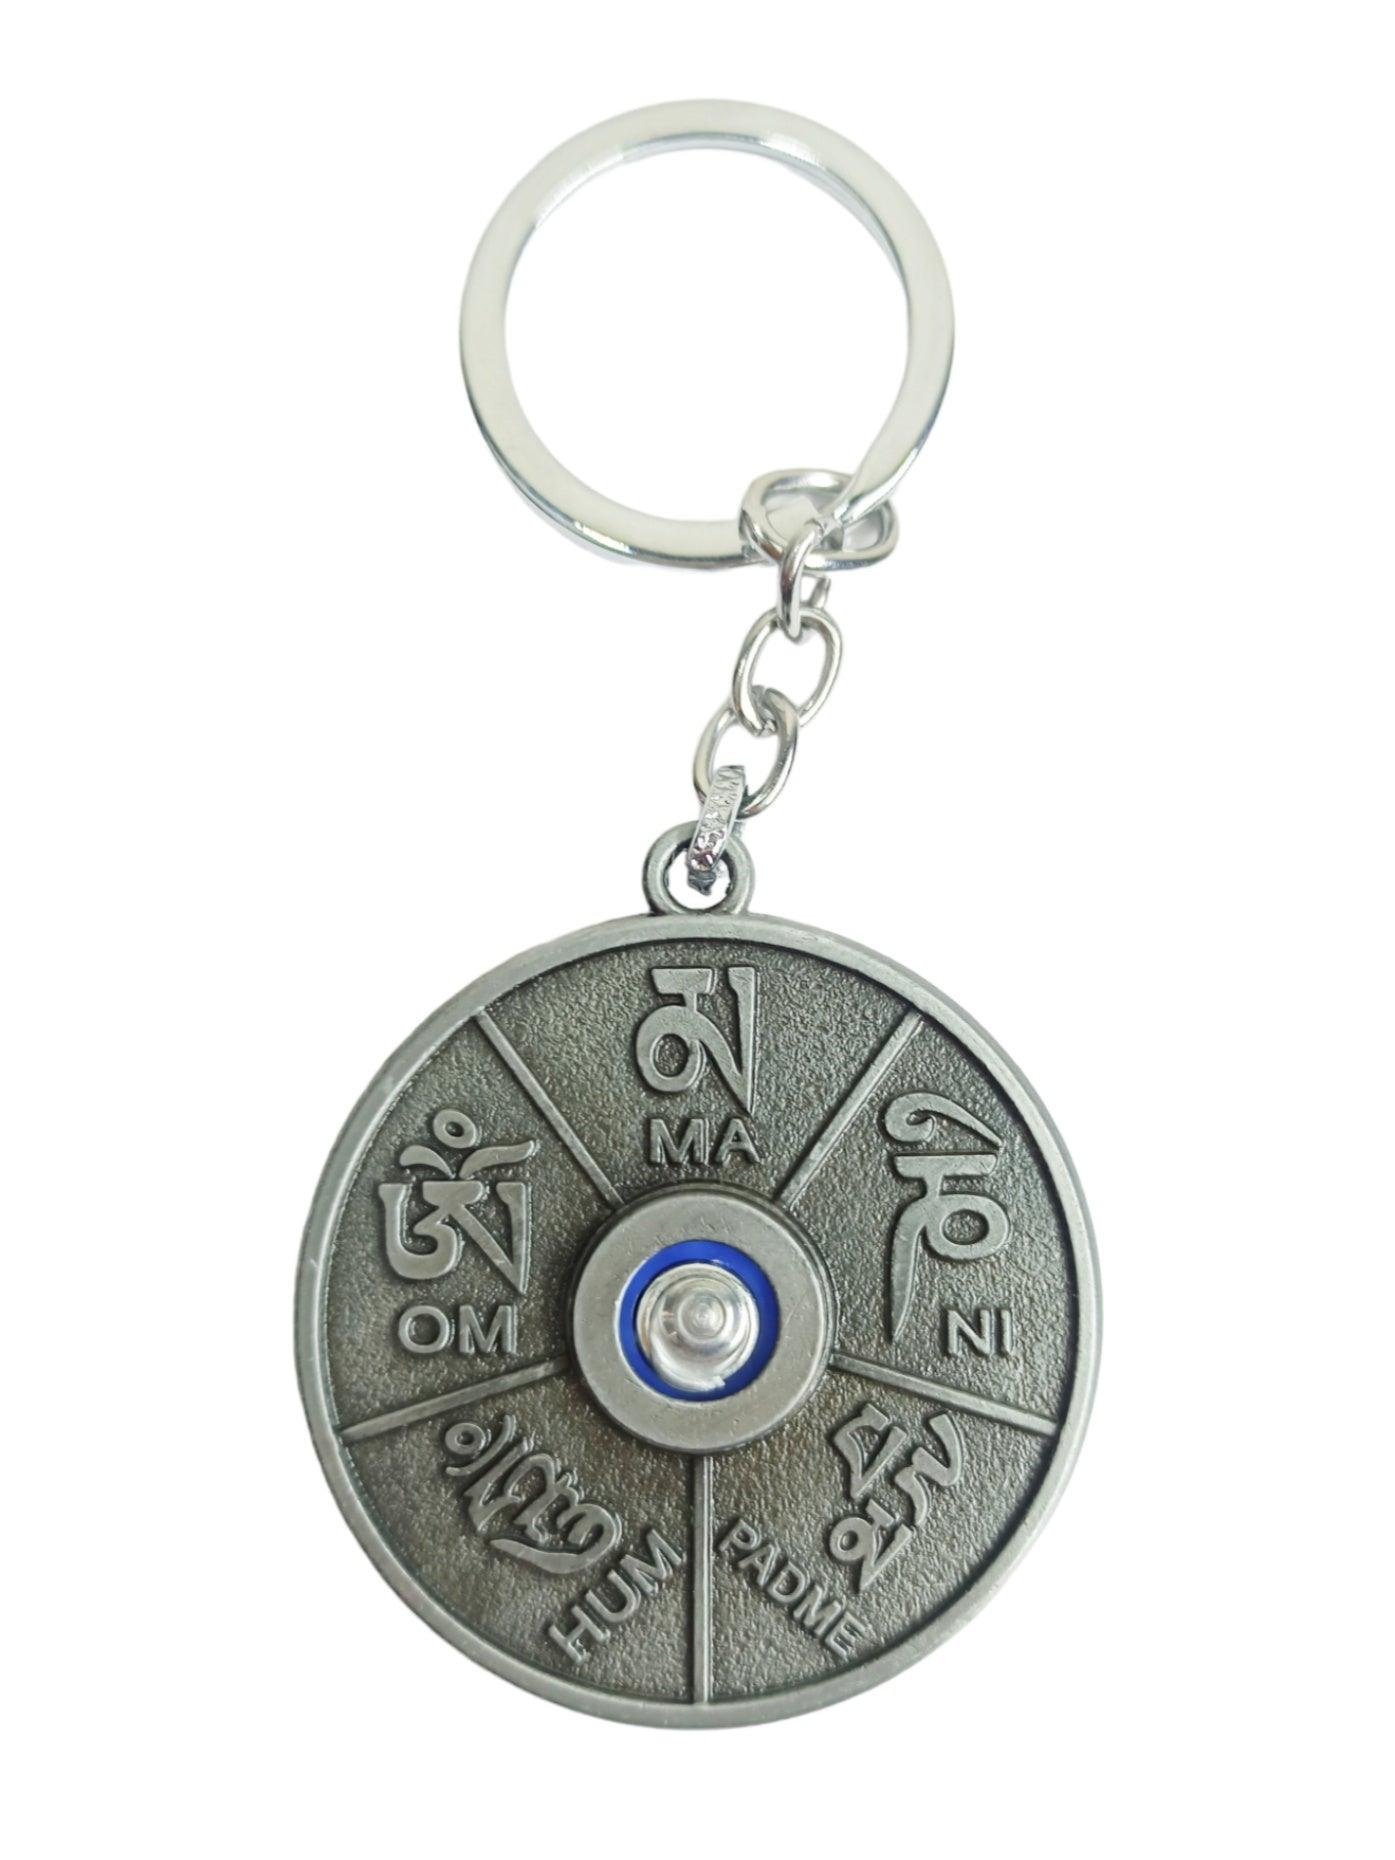 Ladakh Prayer Wheel Keychain | Julley keychain | Ladakh Souvenirs - ZANSKAR ARTS